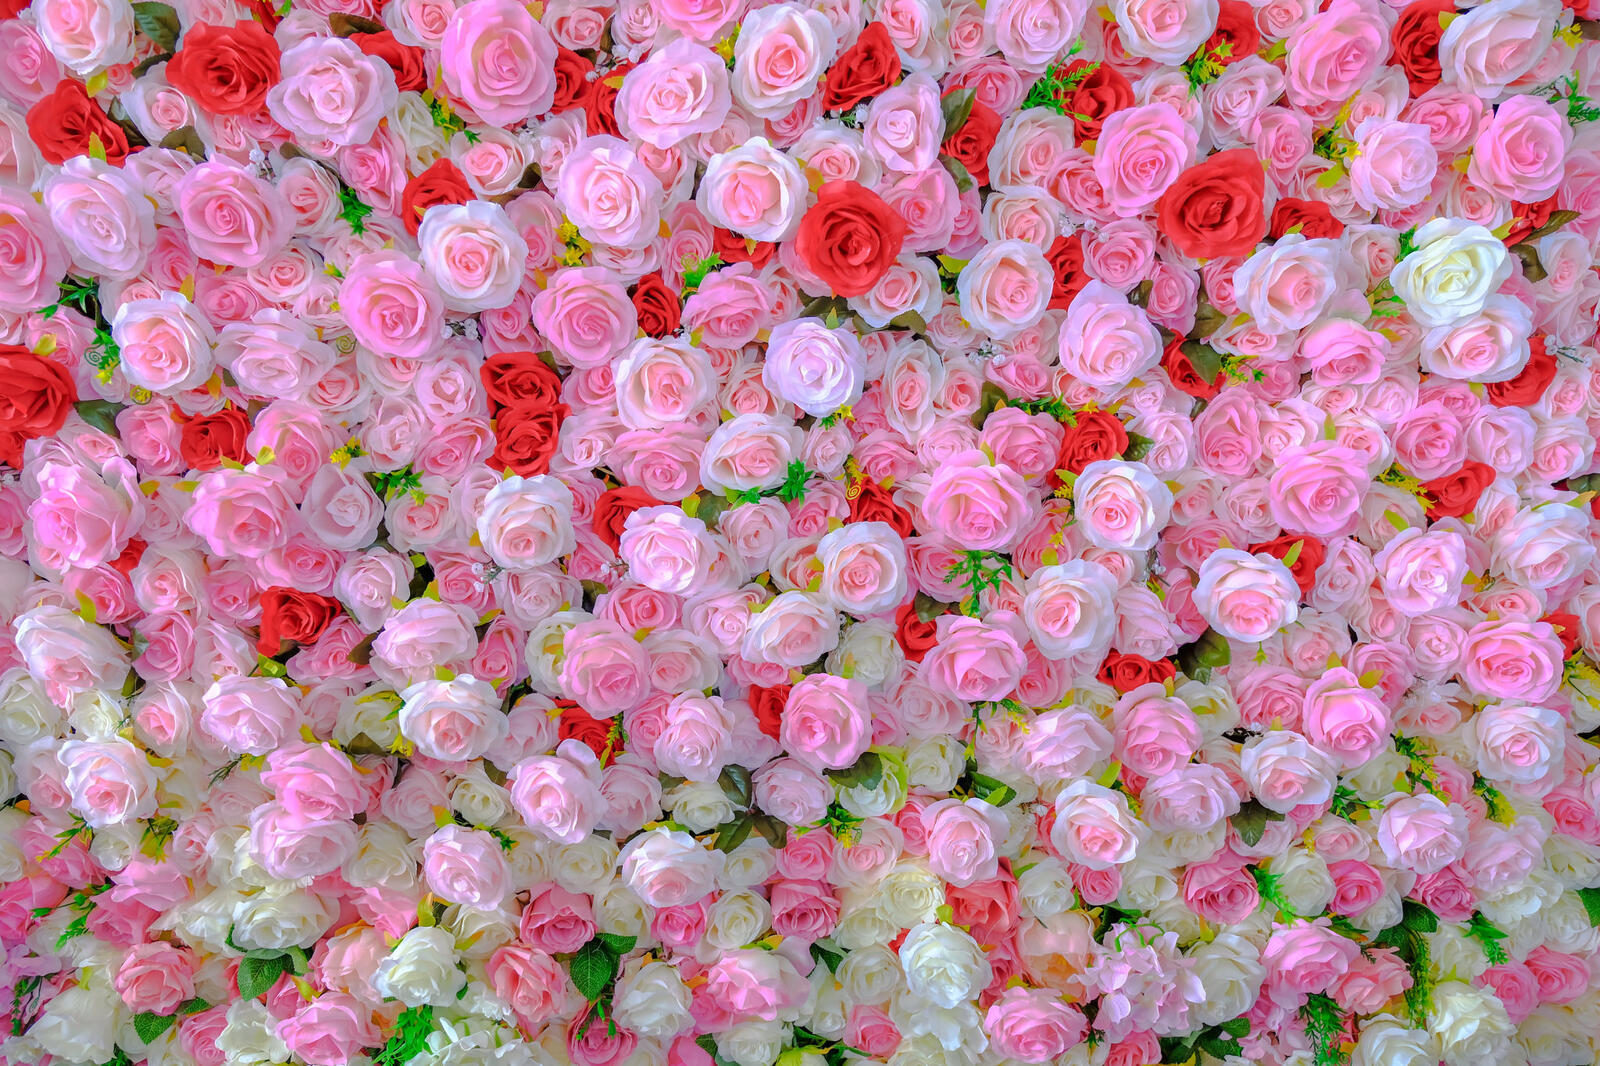 Wallpapers roses floral background floral arrangement on the desktop